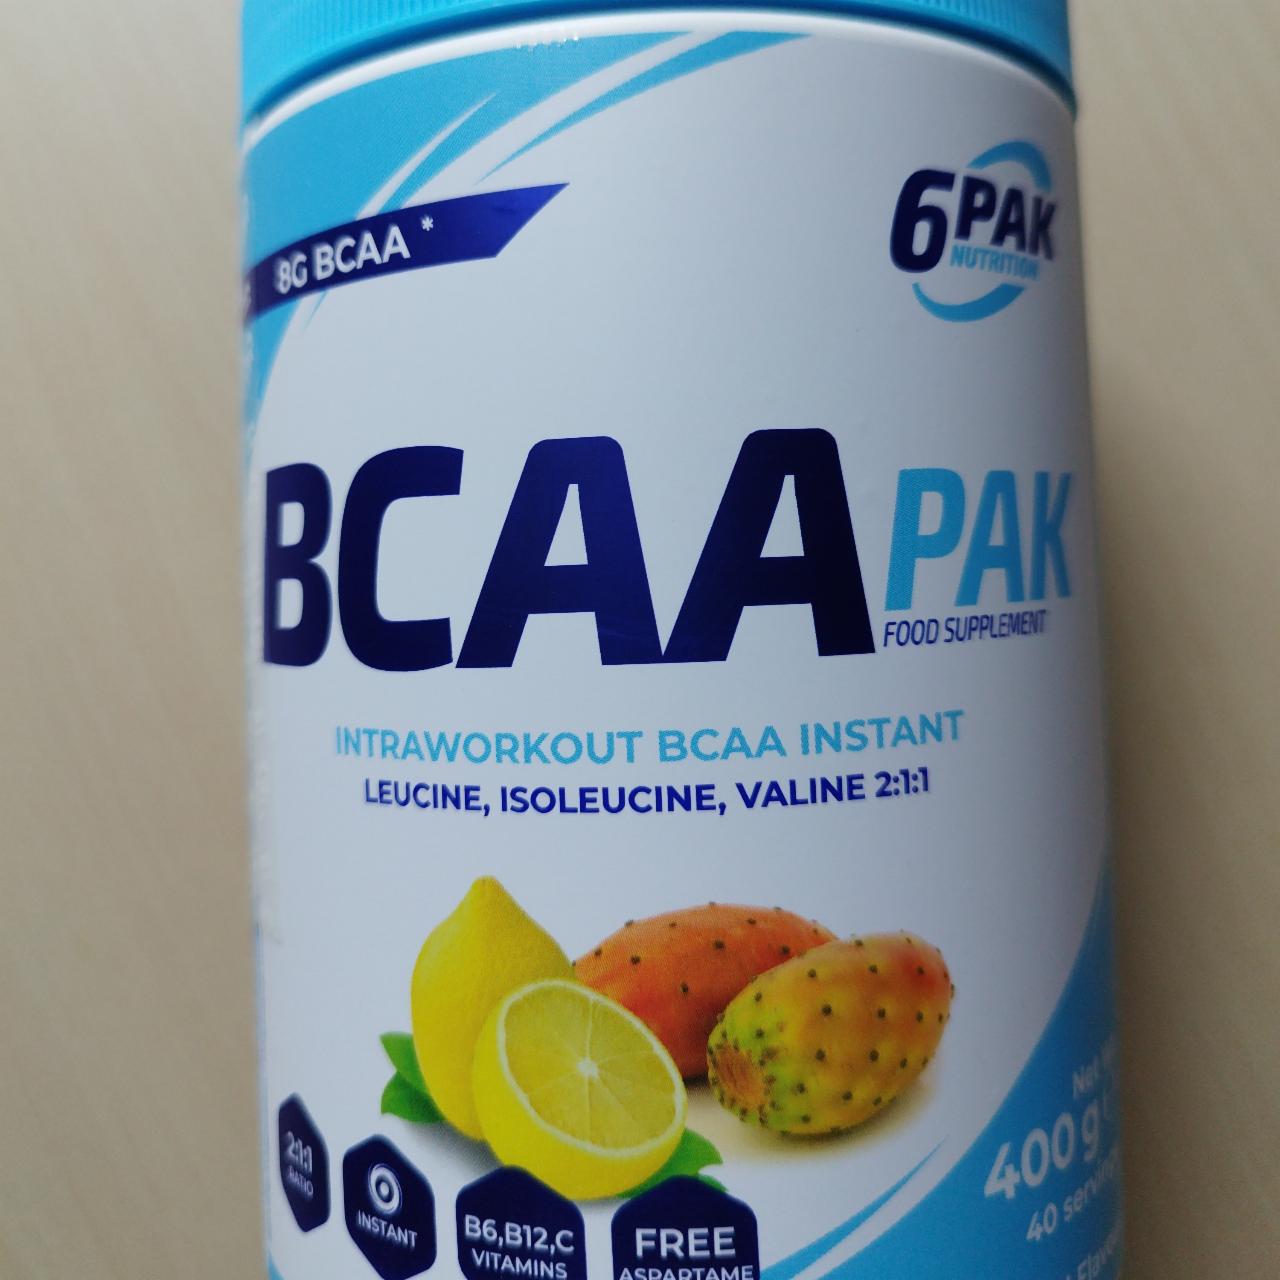 Fotografie - BCAA PAK Cactus Lemon 6PAK Nutrition